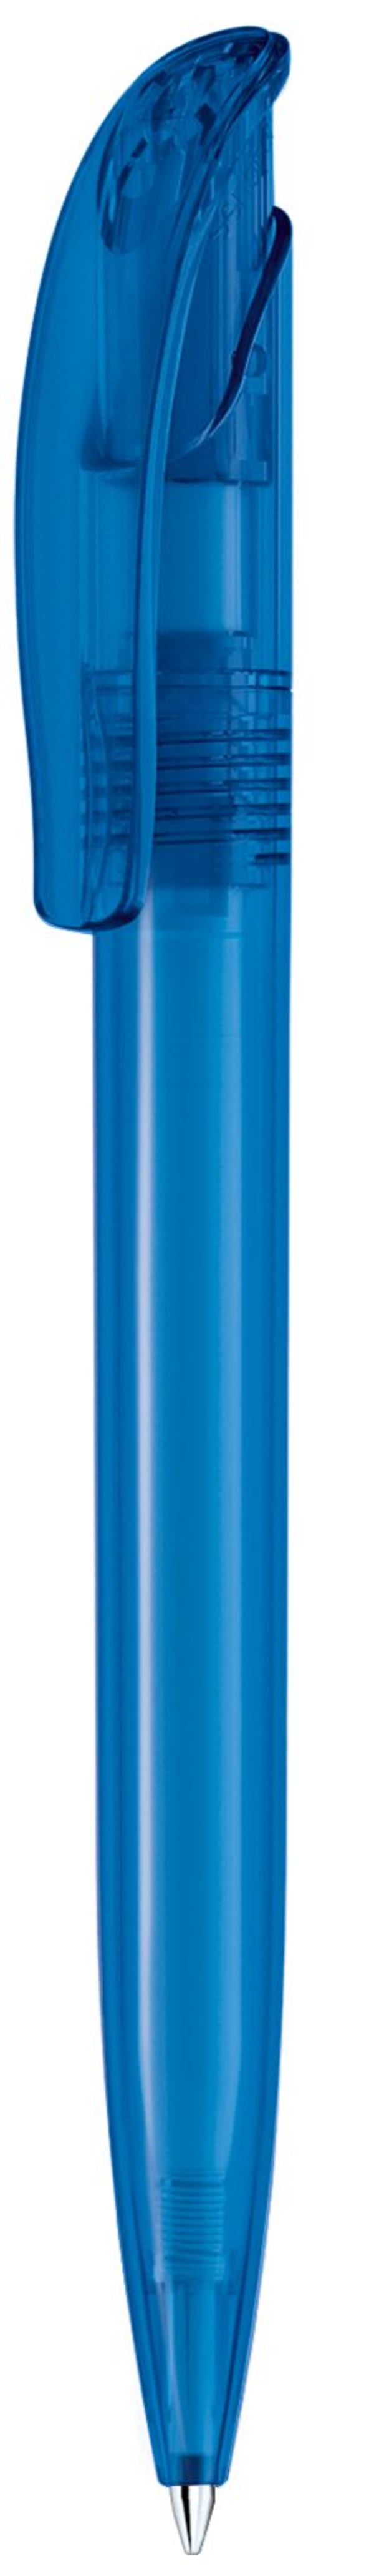 Kugelschreiber-Challenger-Frosted-blau-dokumentenecht-Blau-Kunststoff-Frontansicht-1